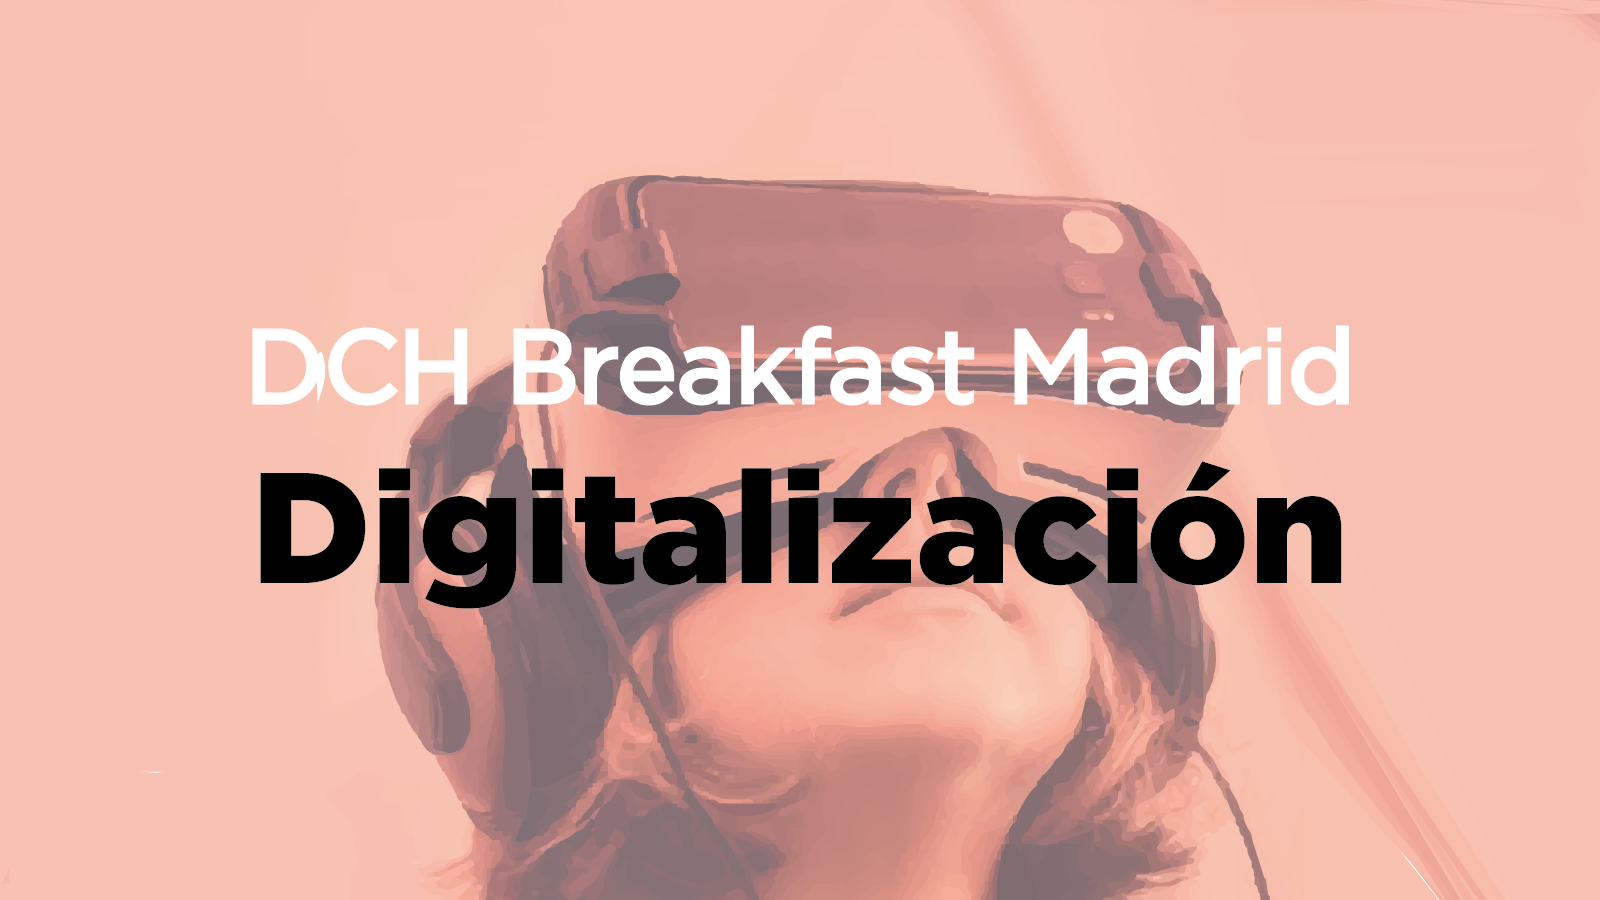 DCH Breakfast Digitalización 05 05